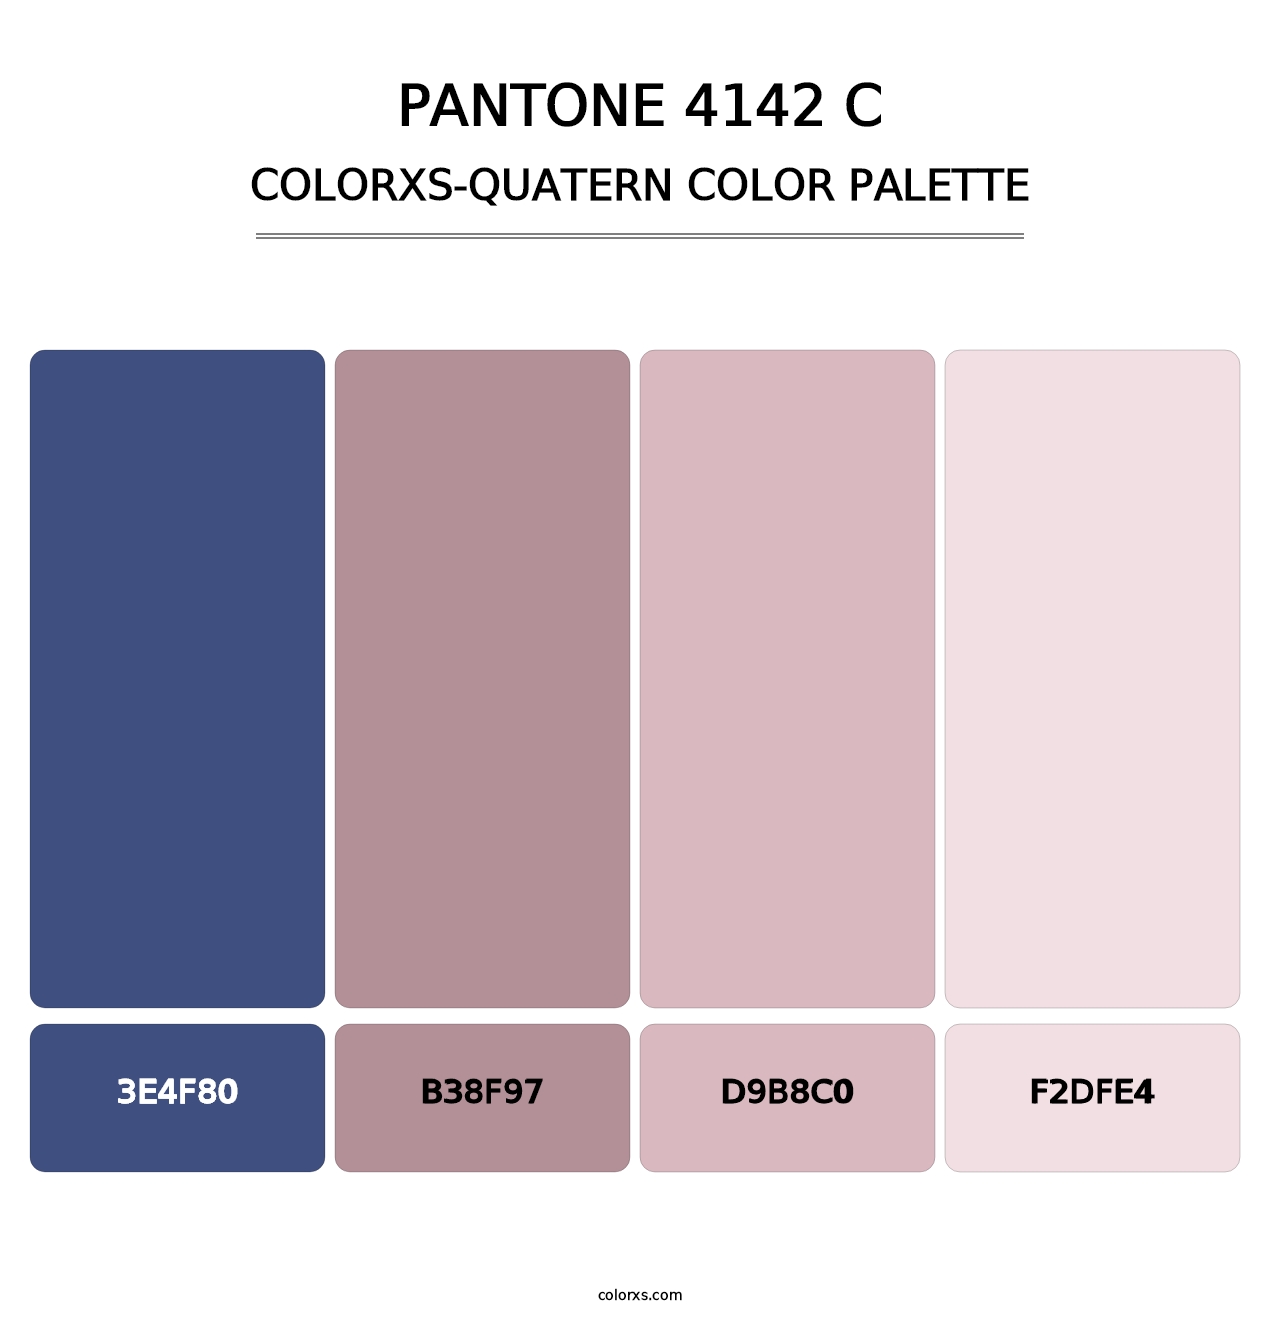 PANTONE 4142 C - Colorxs Quatern Palette